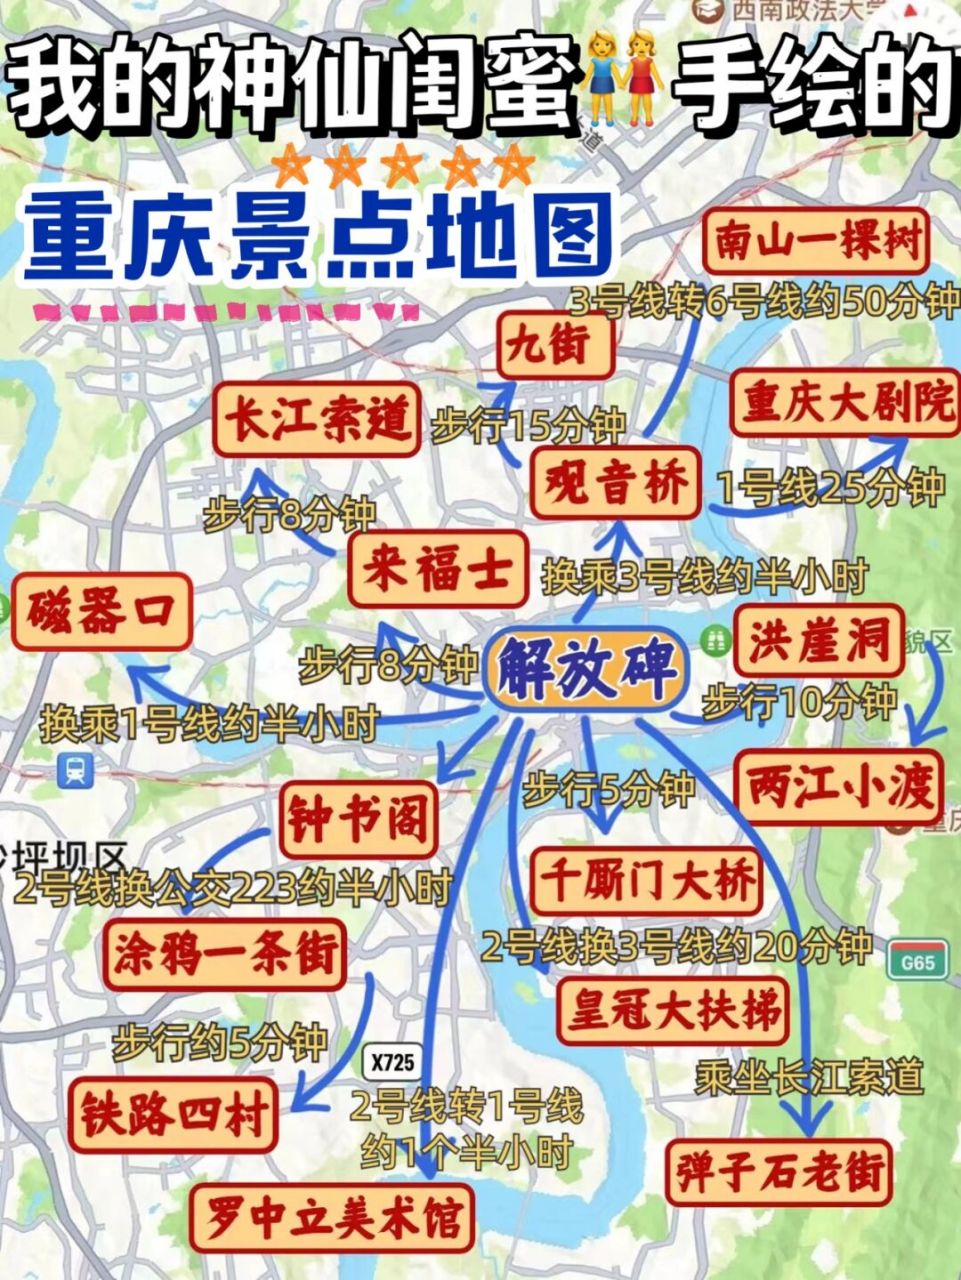 重庆所有景点攻略地图图片